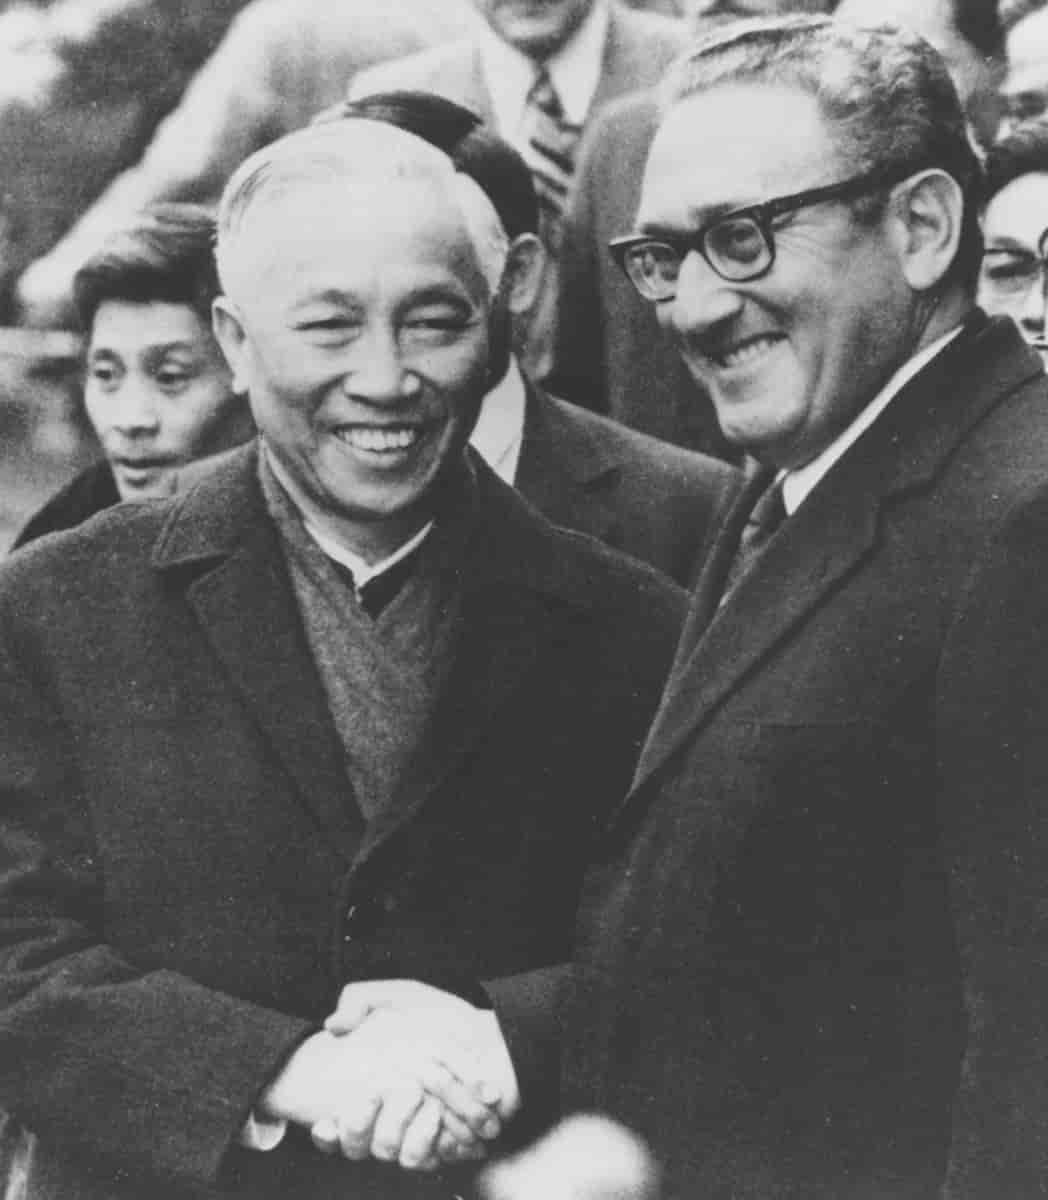 Le Duc Tho og Henry Kissinger